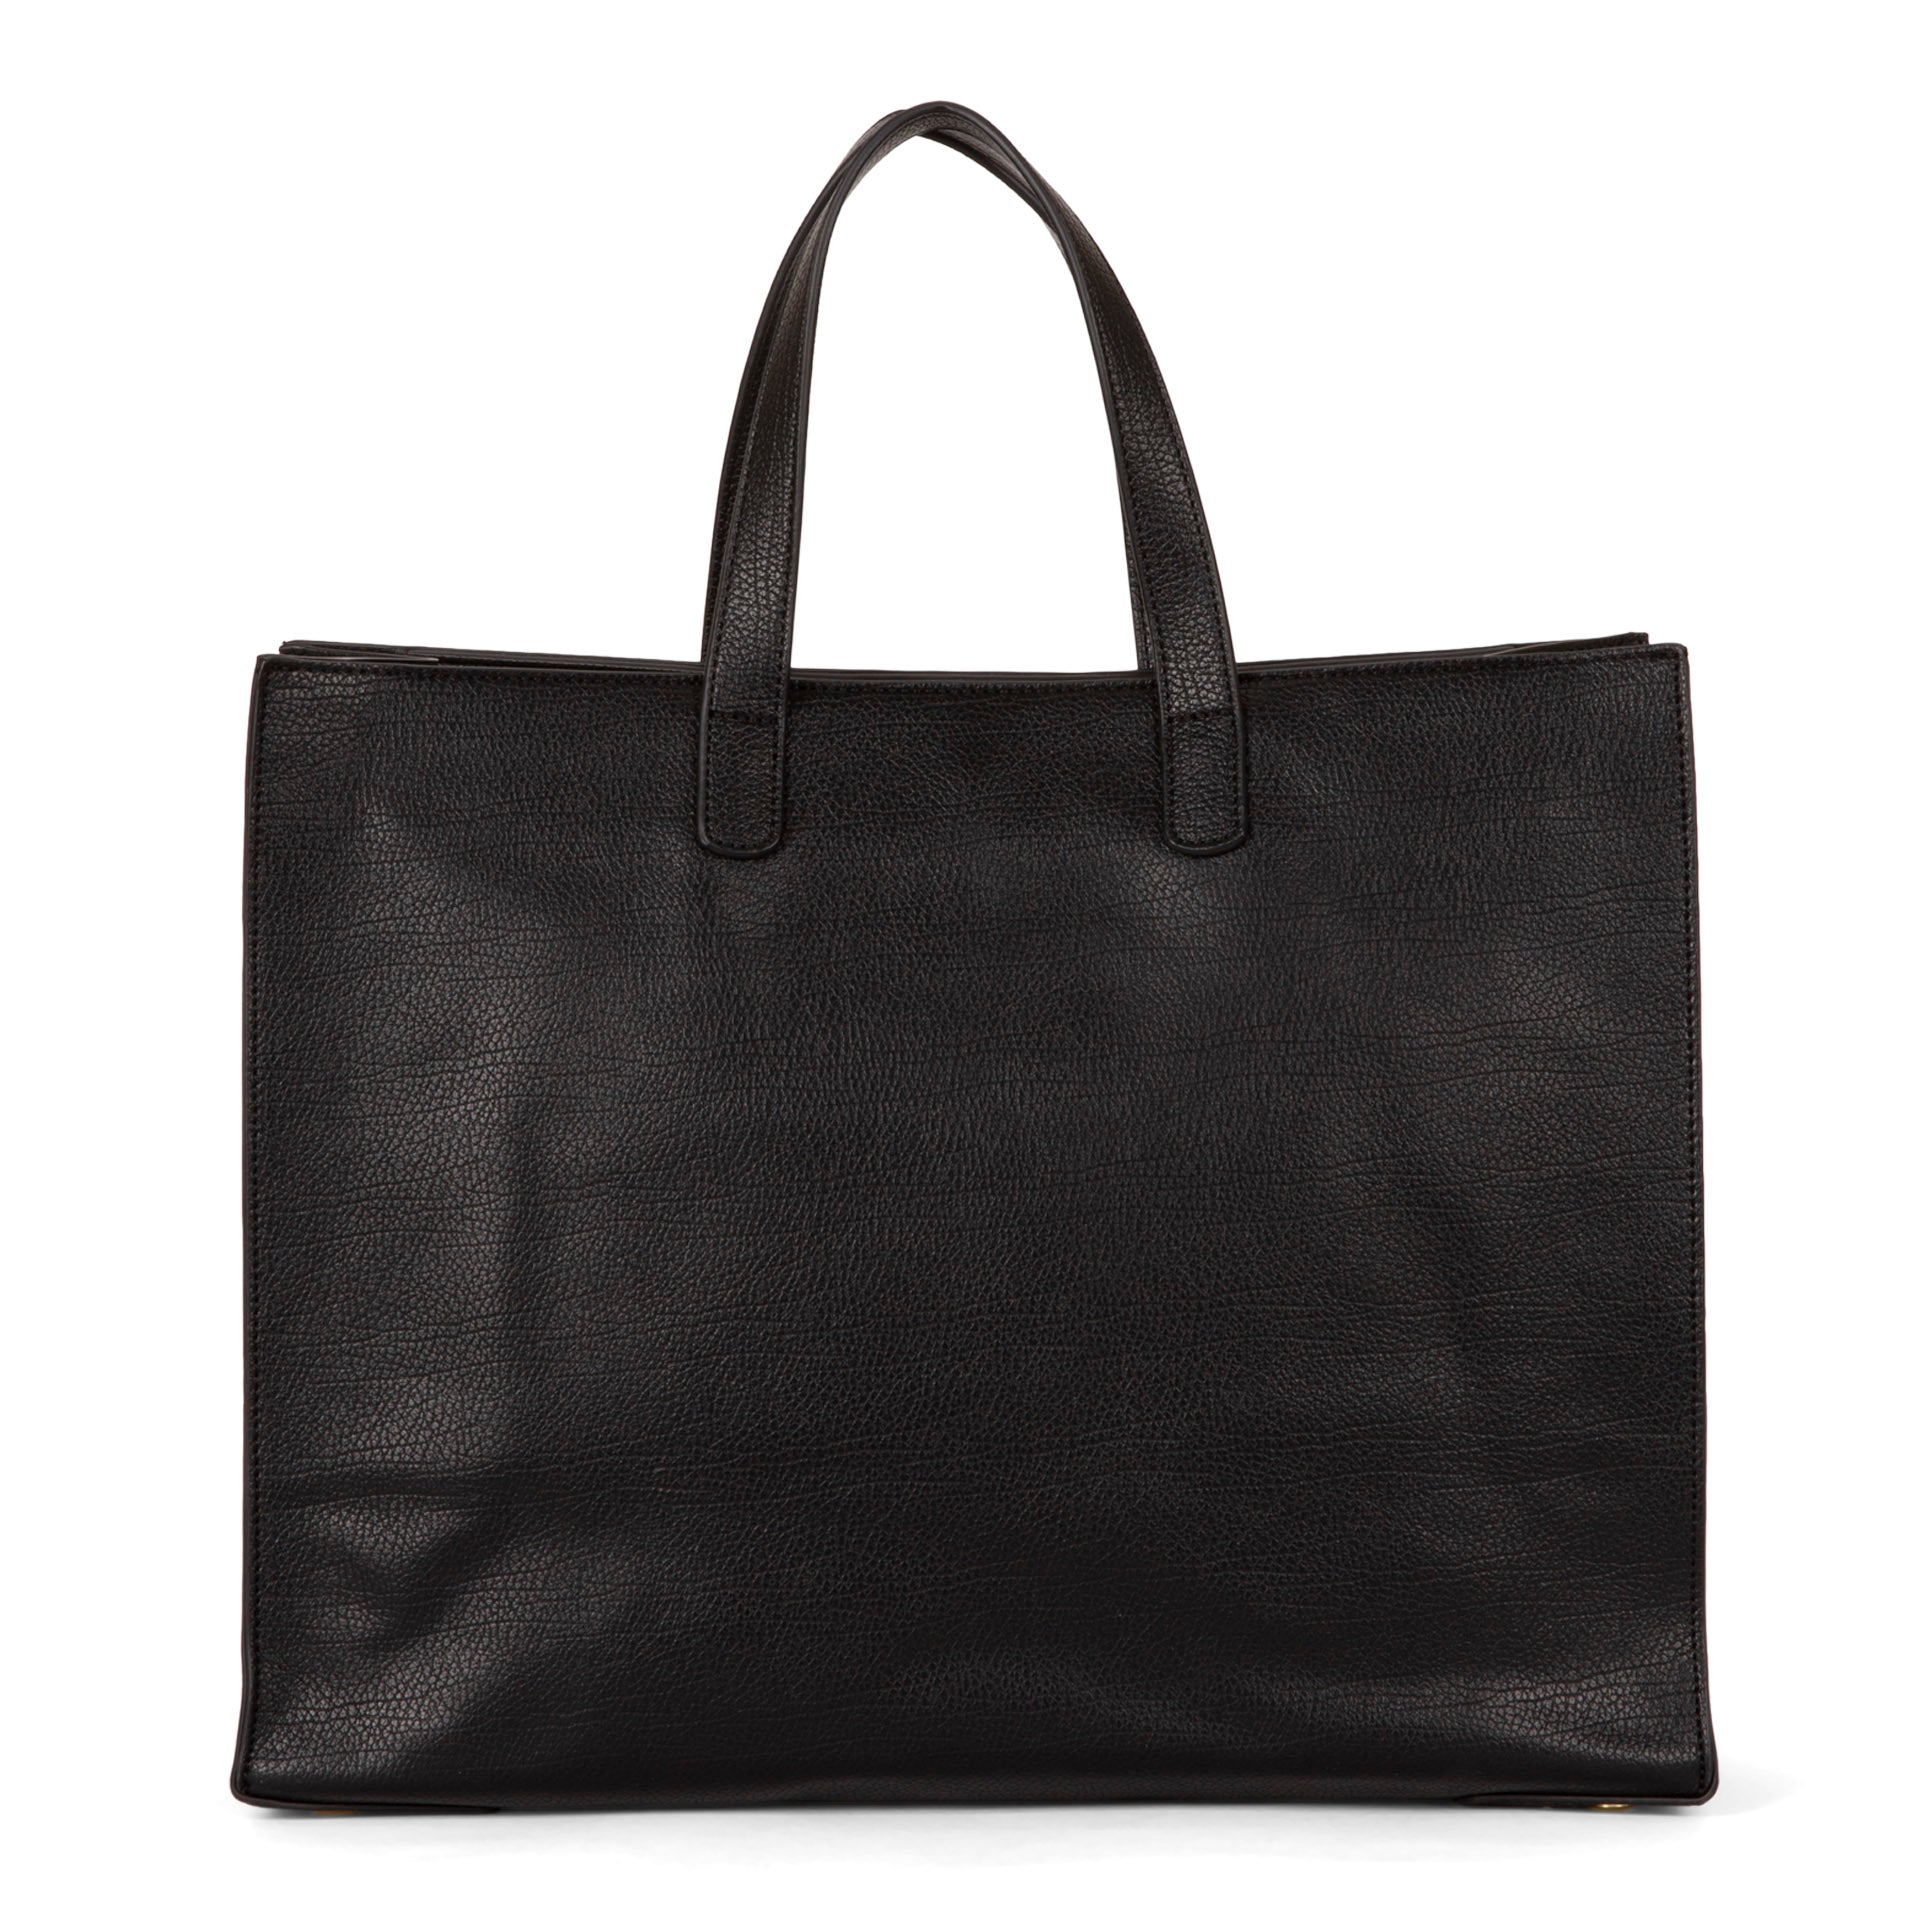 Bucket Shape Bag Black Matte Leather Woman Drawstring Handbag  Personalizable Gift for Her Office Laptop Purse Shoes Addition Gift Ladybuq  - Etsy Canada | Carteras de cuero, Bolsos de cuero, Cuero hecho